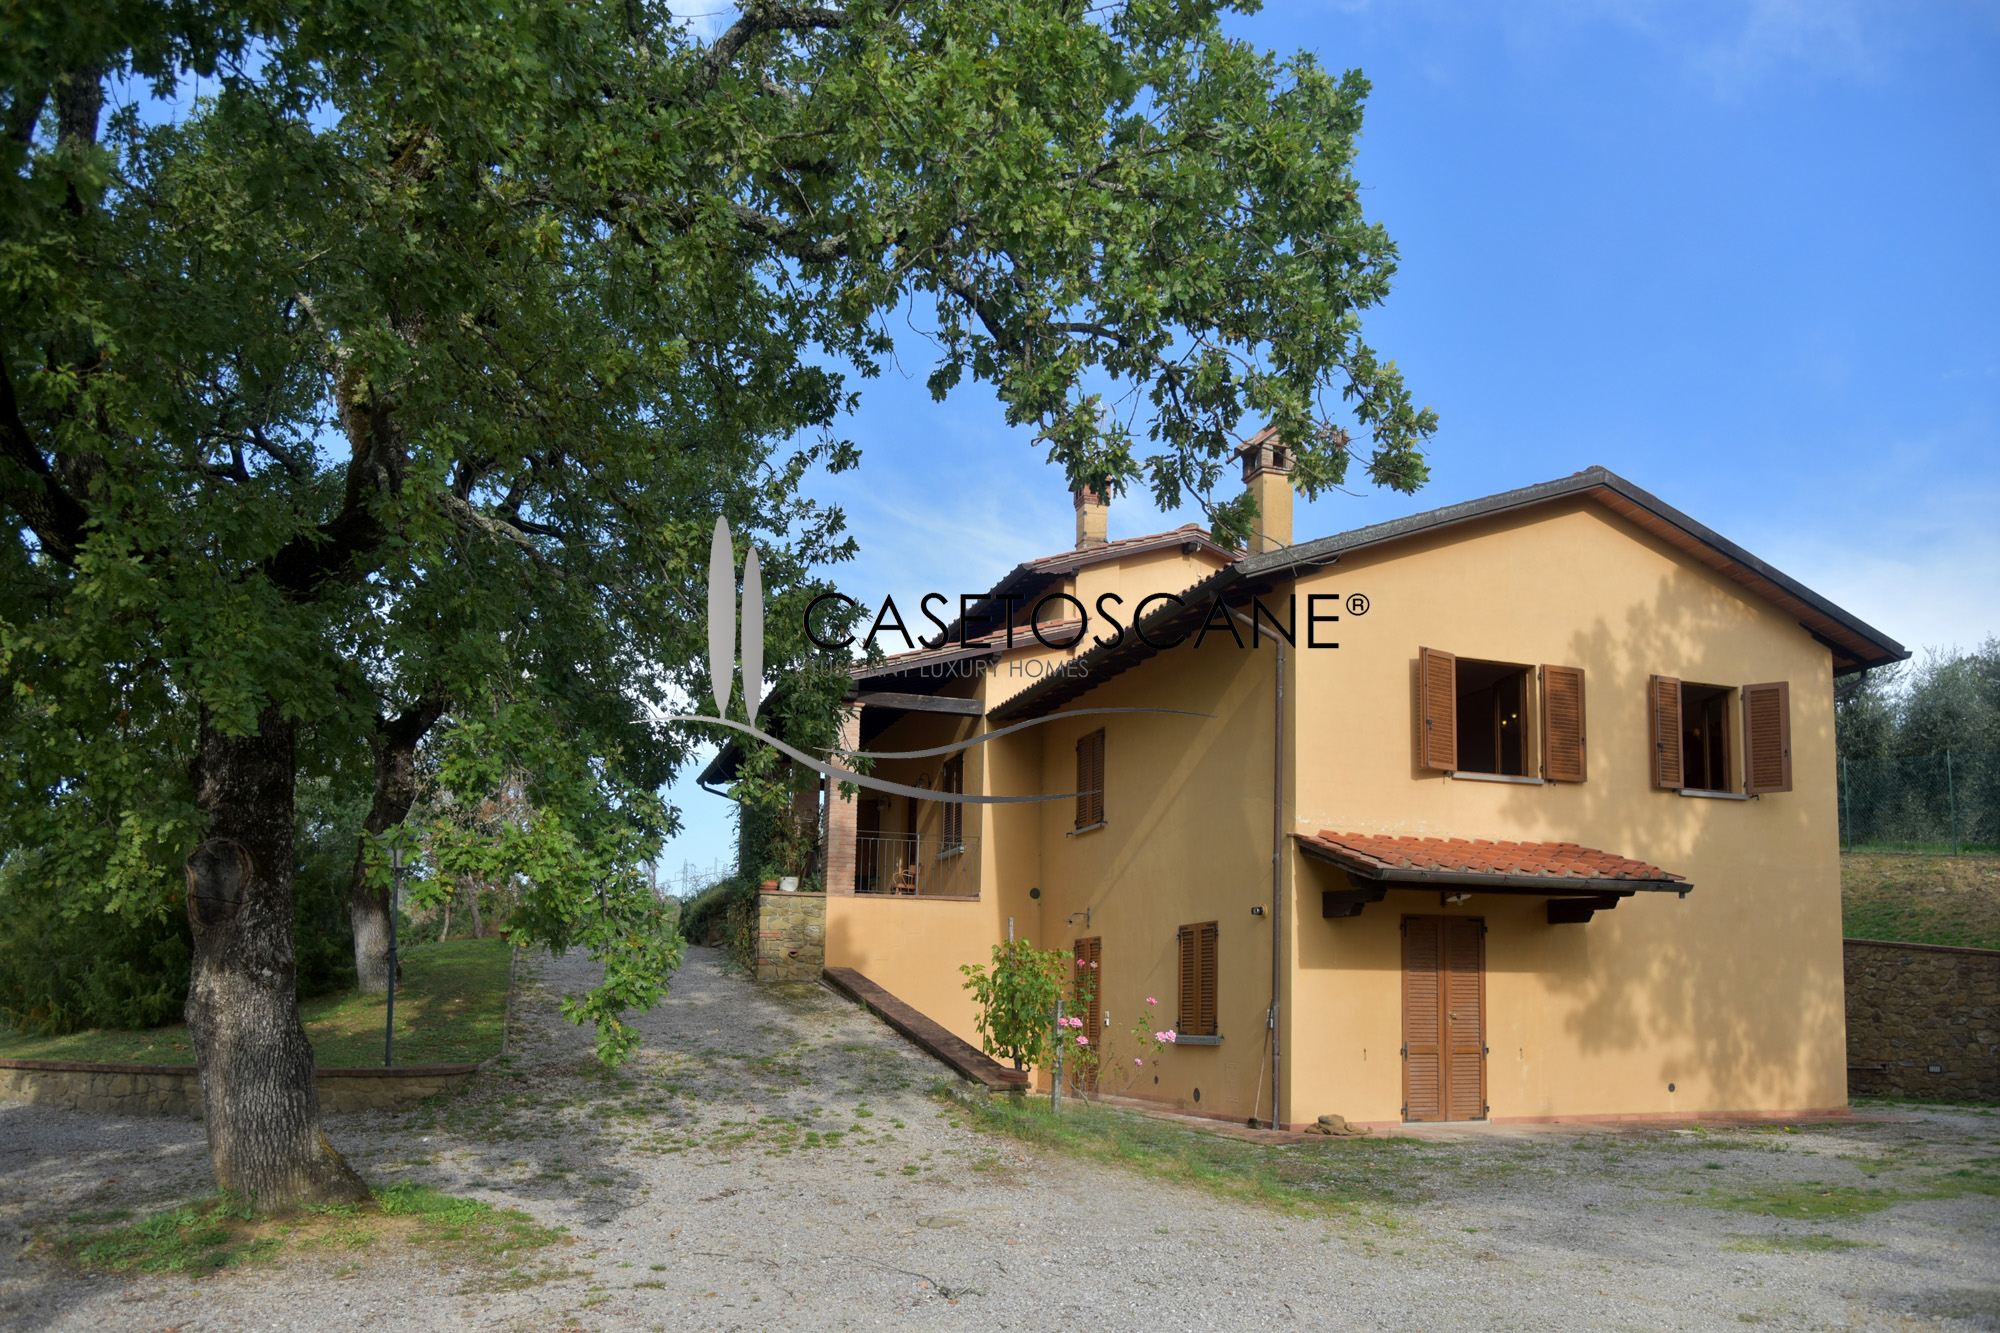 3119 - Villa ristrutturata di mq.300 con due appartamenti, piscina, garage triplo, piscina e terreno ha.2,5 con olivi e boschetto a Monte San Savino (AR).